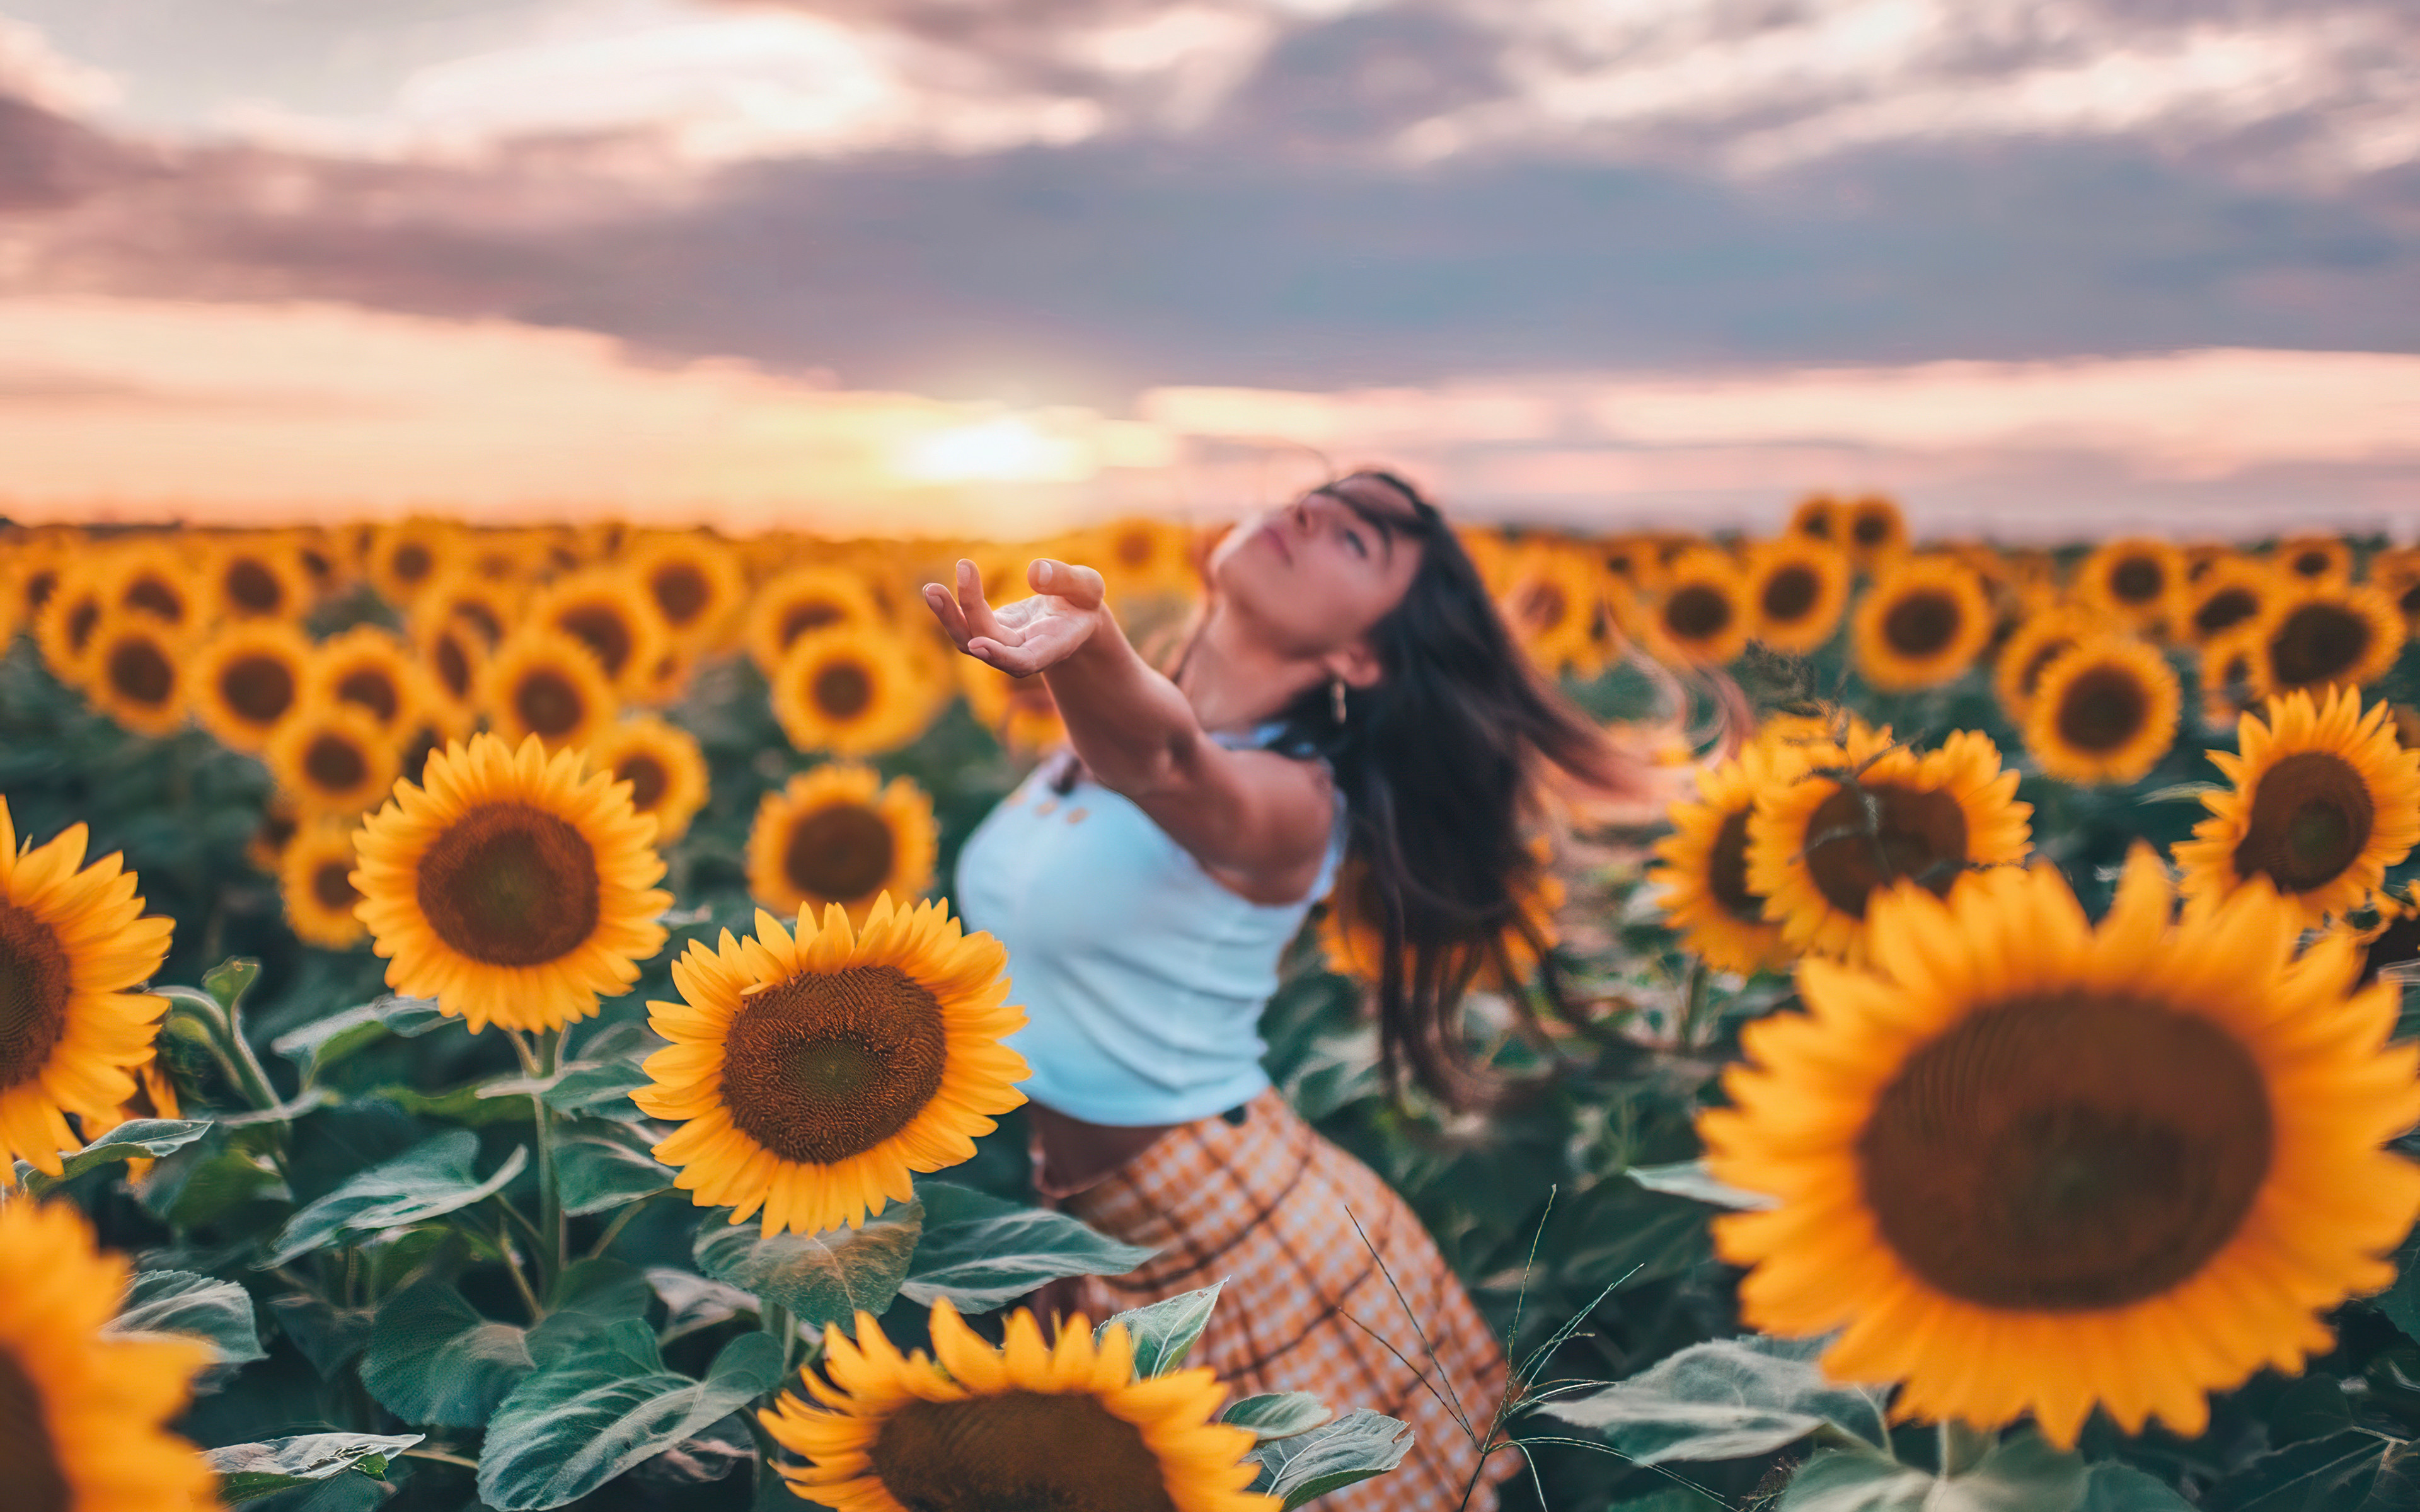 Girl in field of sunflowers Wallpaper 4k Ultra HD